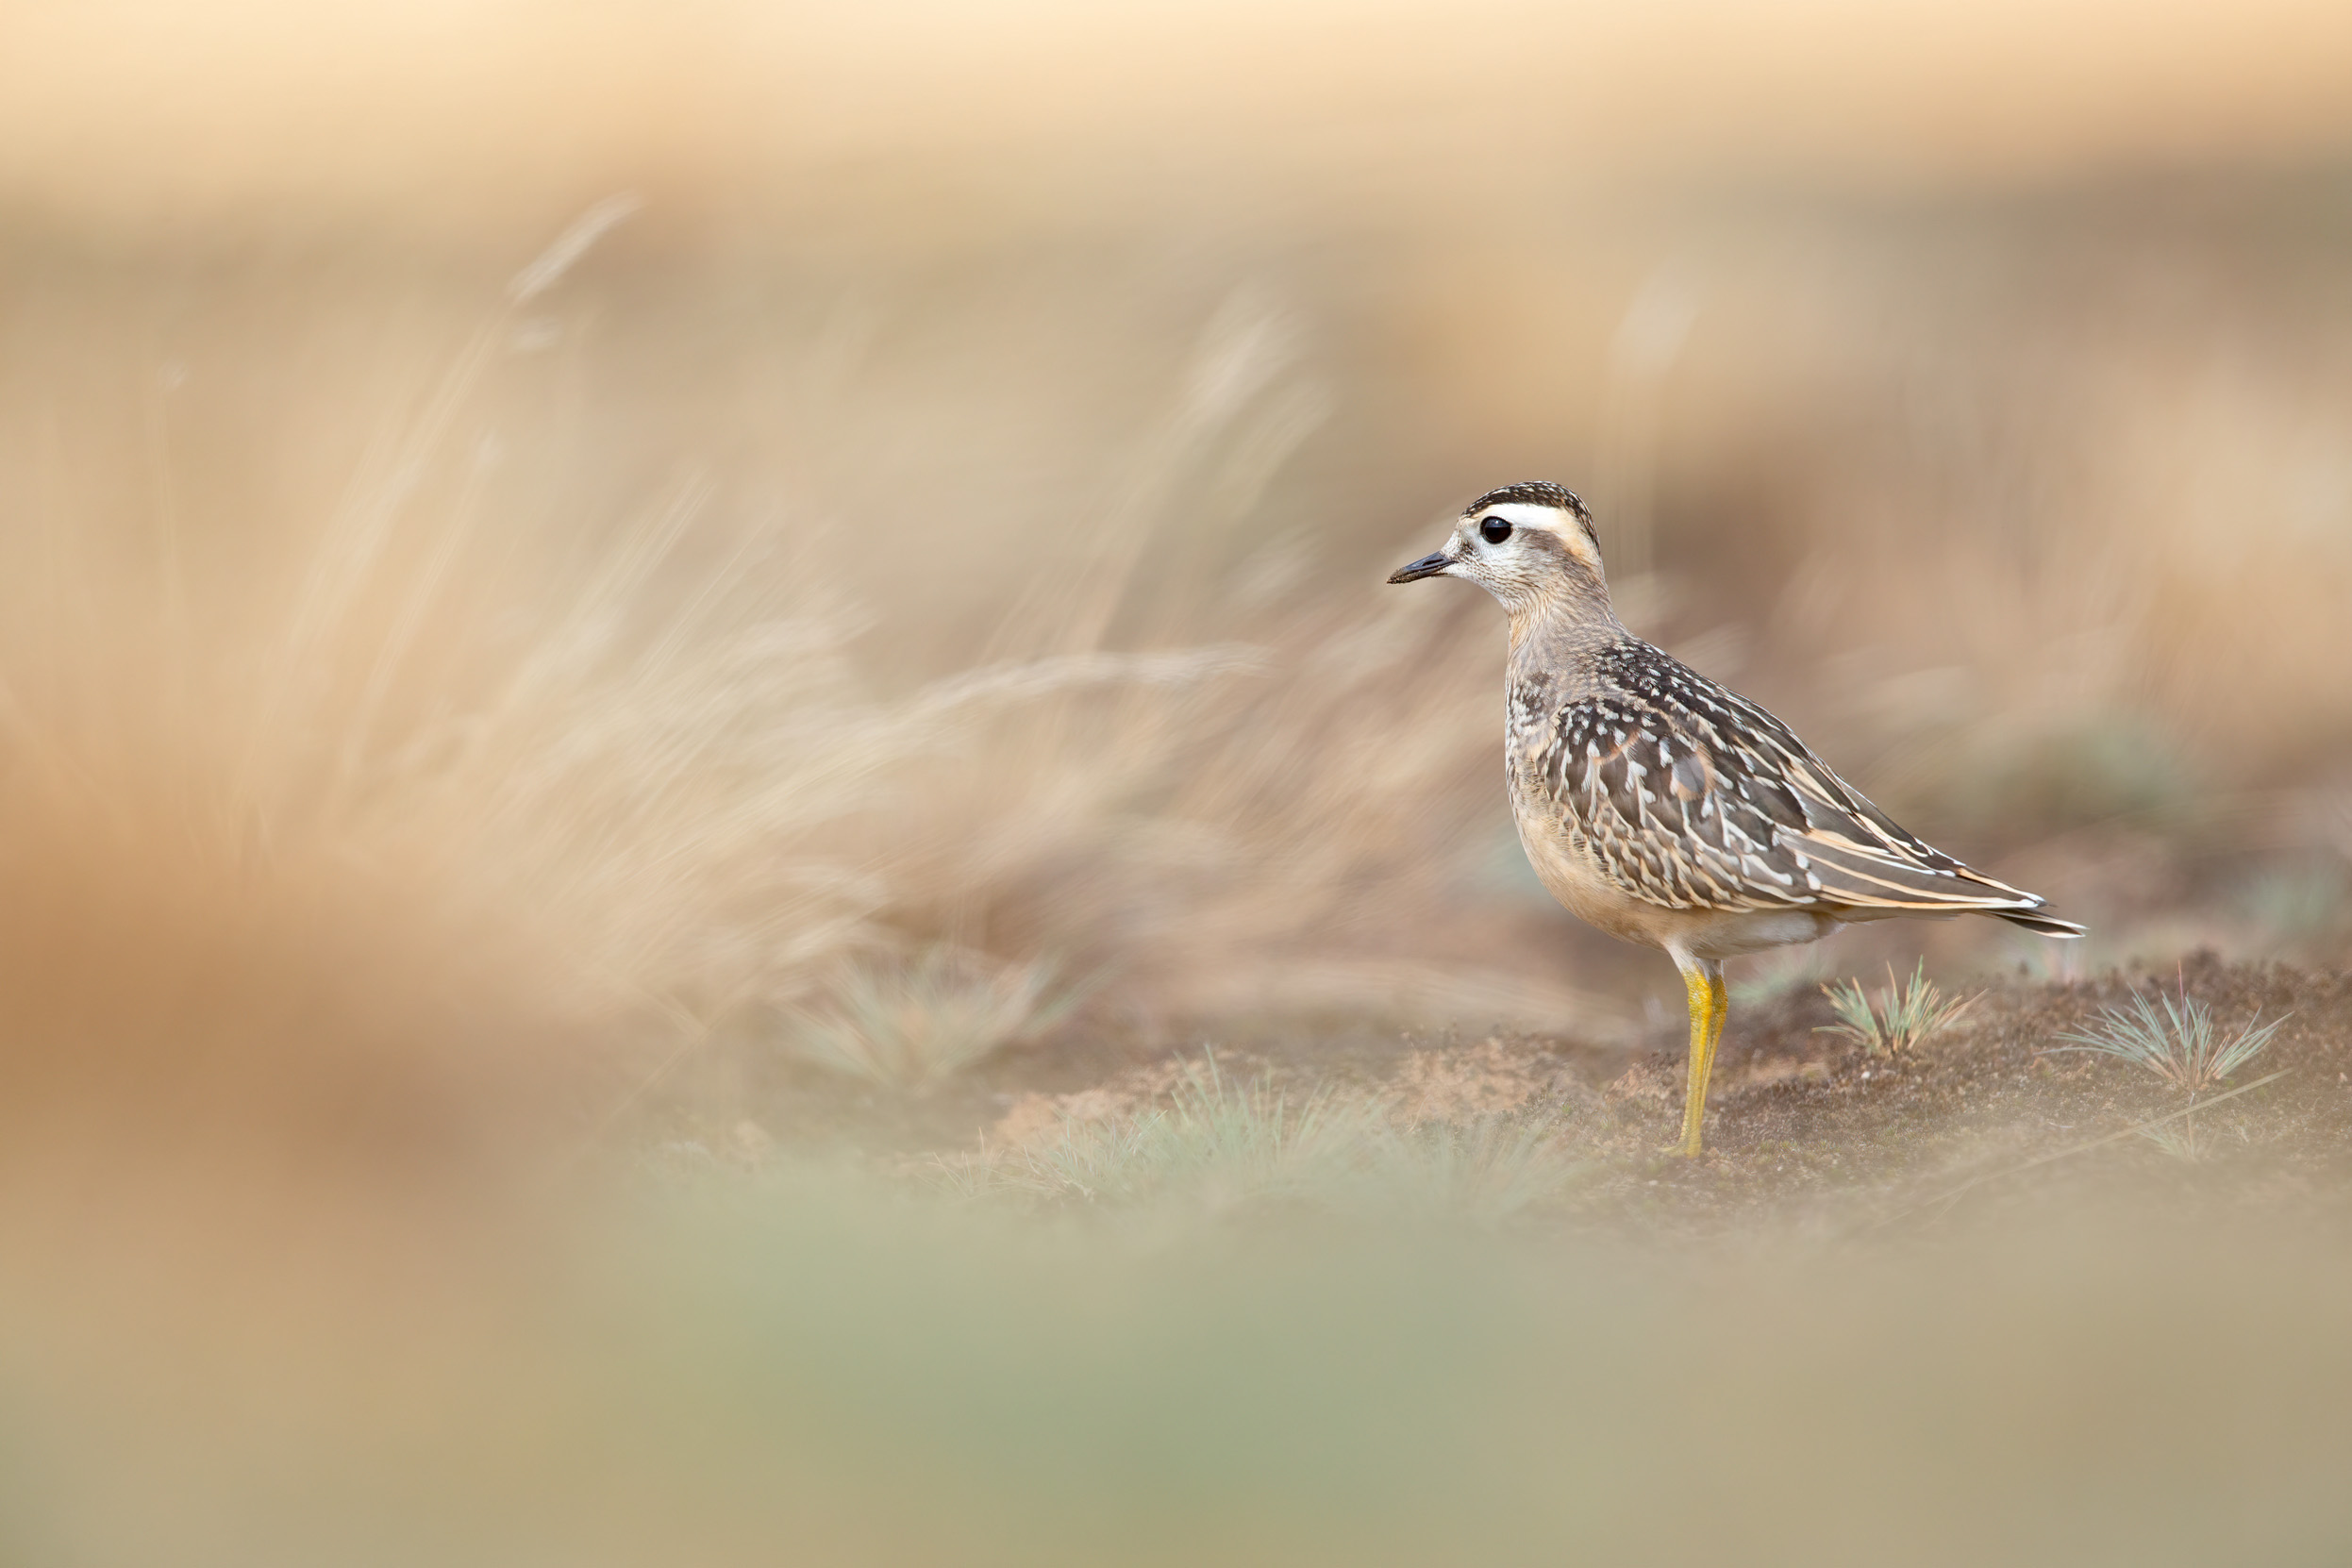 A juvenile Dotterel stood in grassland.